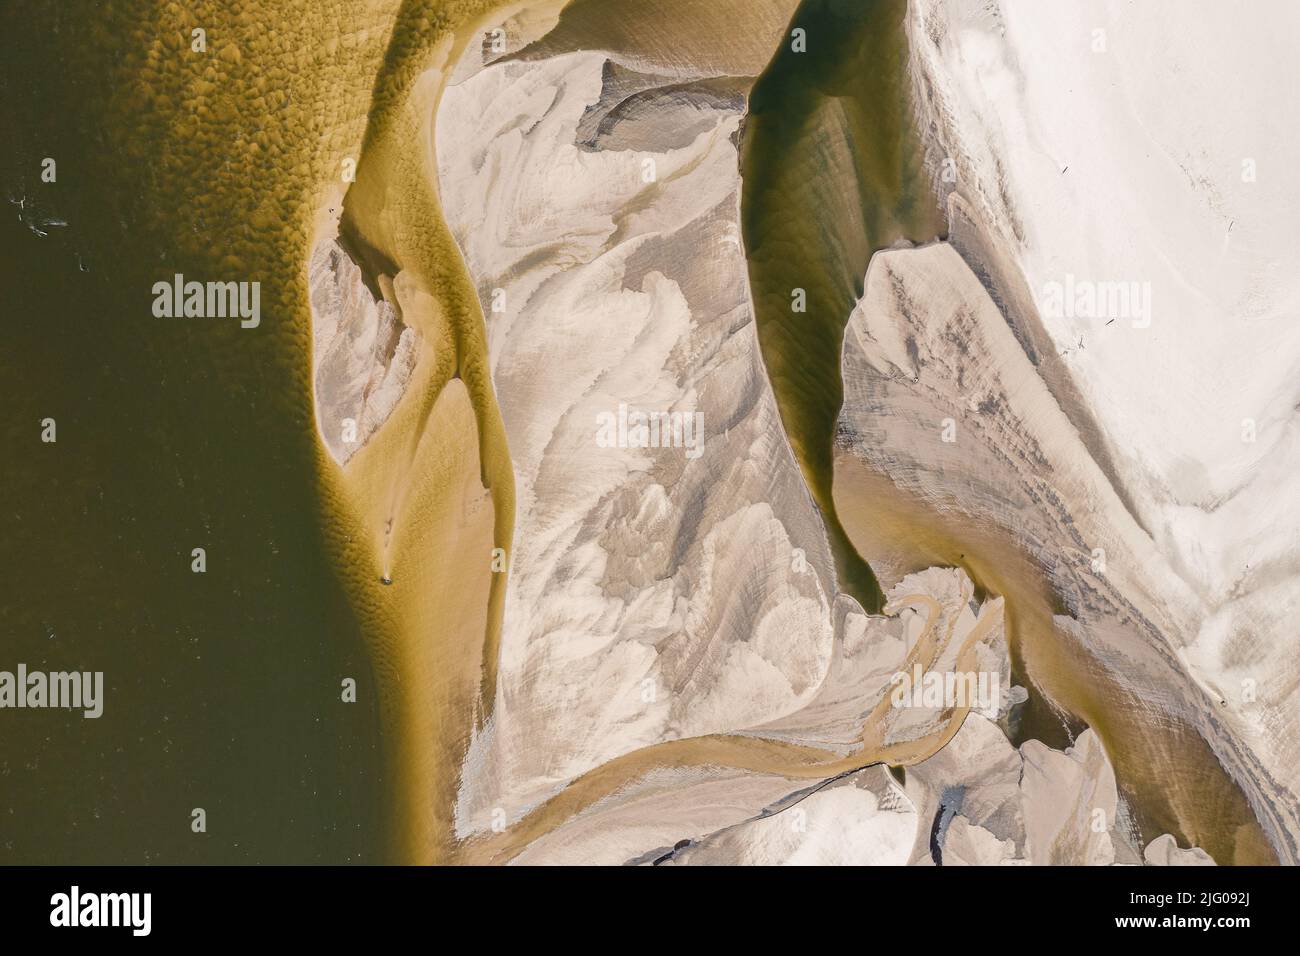 Basso livello d'acqua nel fiume Vistula, effetto della siccità vista dall'occhio dell'uccello. Orizzontale in prospettiva dall'alto verso il basso. Foto Stock